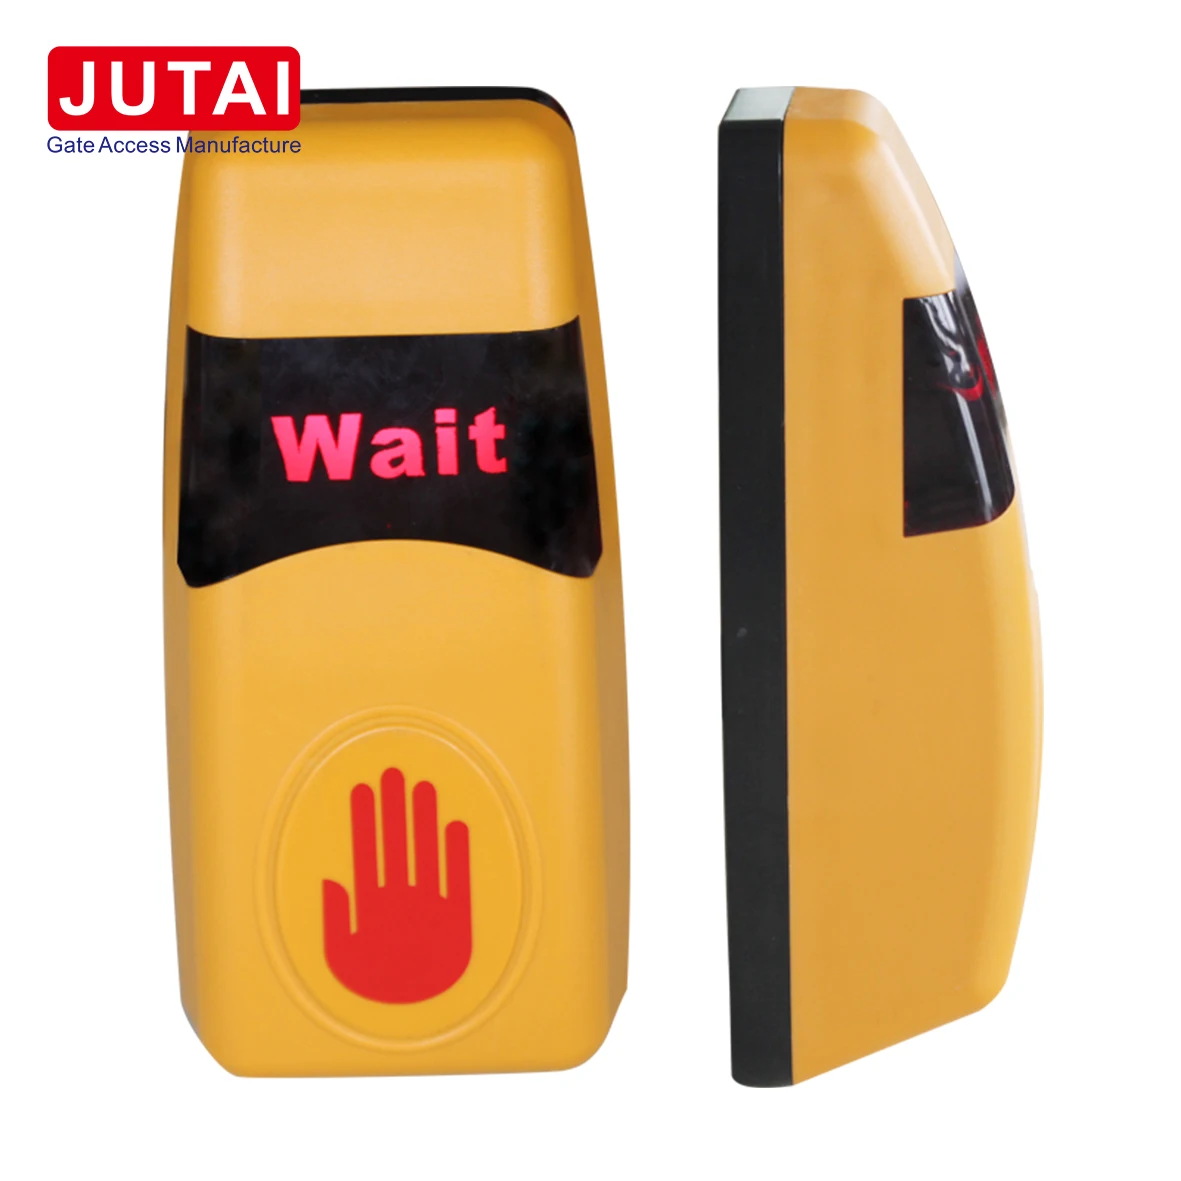 Pulsante touchless sensore a infrarossi per porte JUTAI JT-THE per sistema di controllo accessi e sistema di accesso al cancello